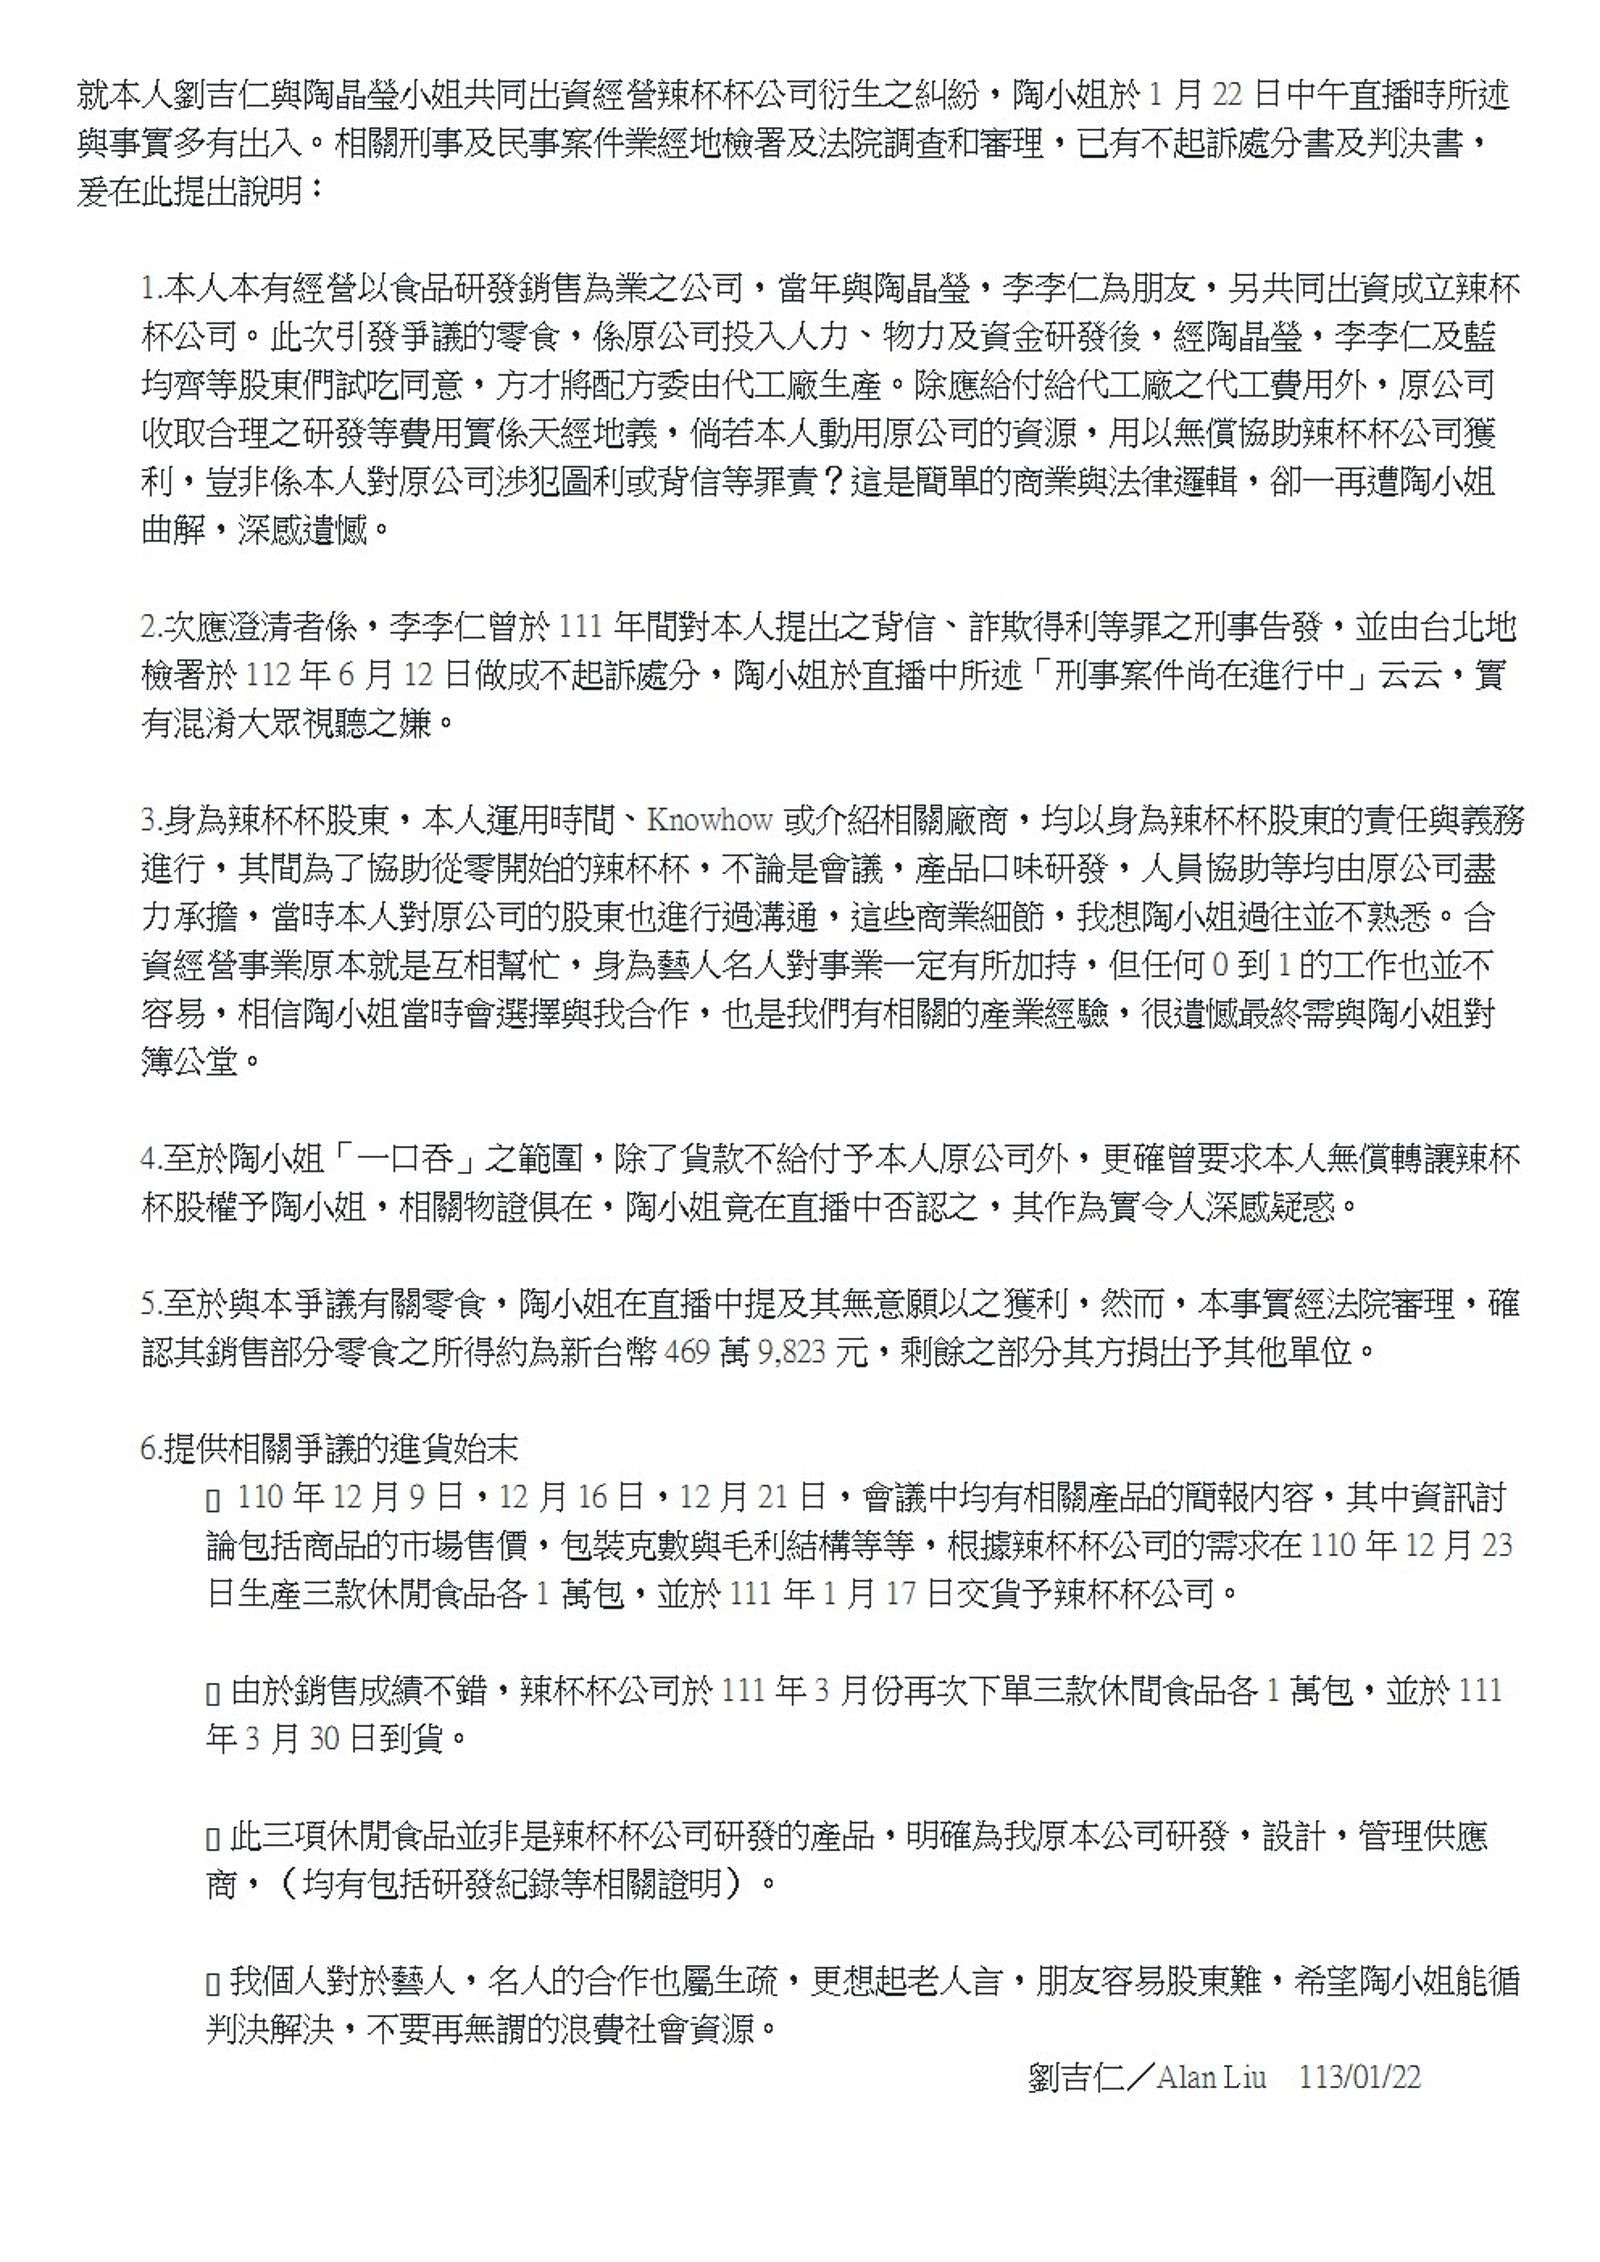 吉品養生總經理劉吉仁發布個人聲明。